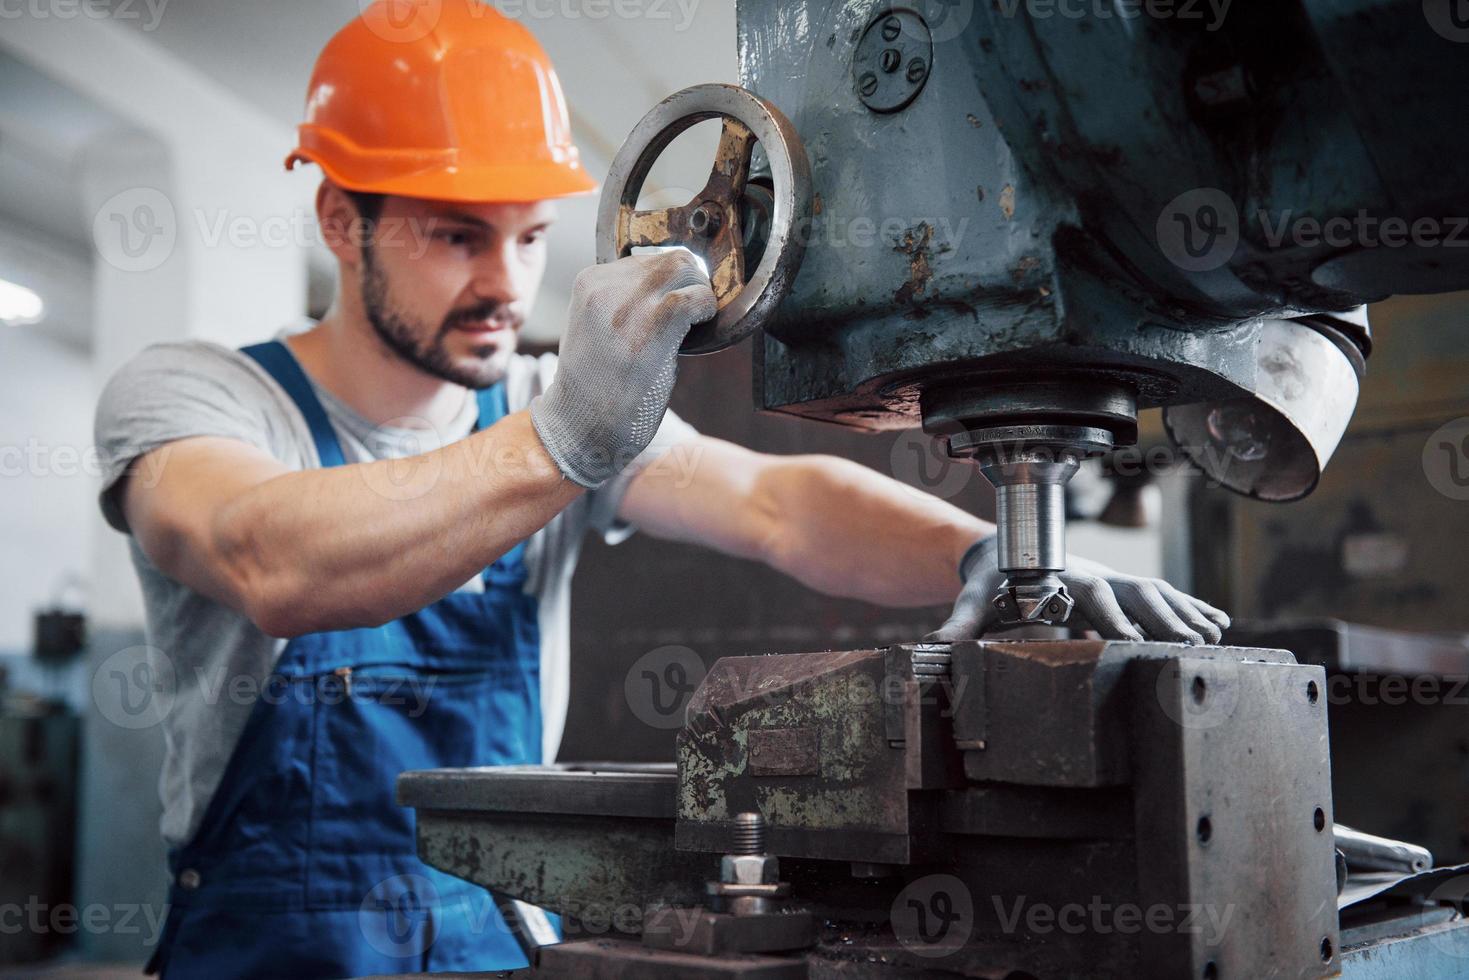 porträtt av en ung arbetare i en hård hatt på en stor metallbearbetningsanläggning. ingenjören servar maskinerna och tillverkar delar till gasutrustning foto